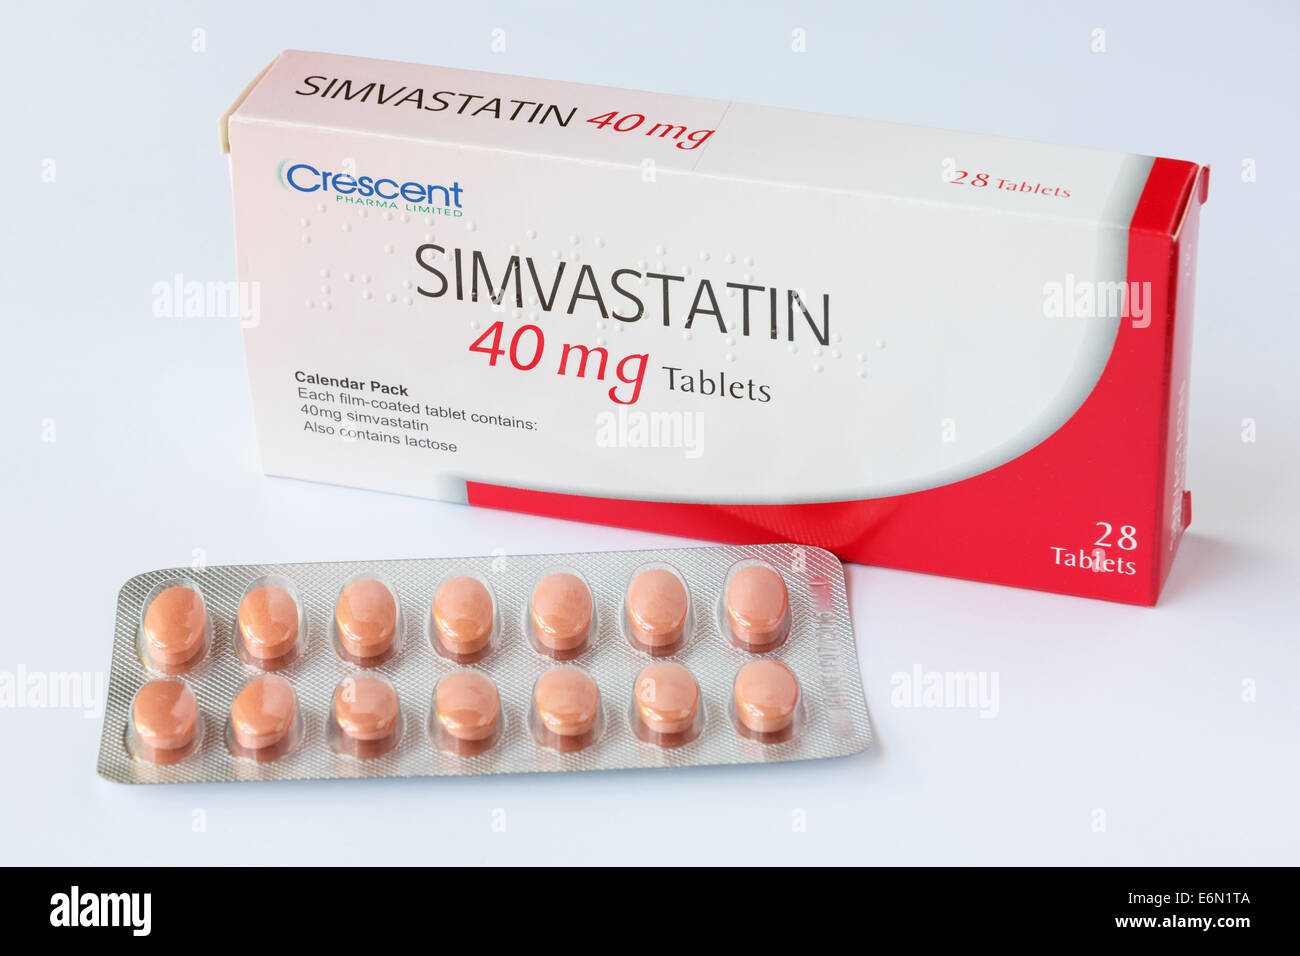 Crescent Pharma Limited simvastatina 40 mg compresse in una lamina blister con scatola per il trattamento prescritto e ridurre il colesterolo alto. Inghilterra, Regno Unito Foto Stock